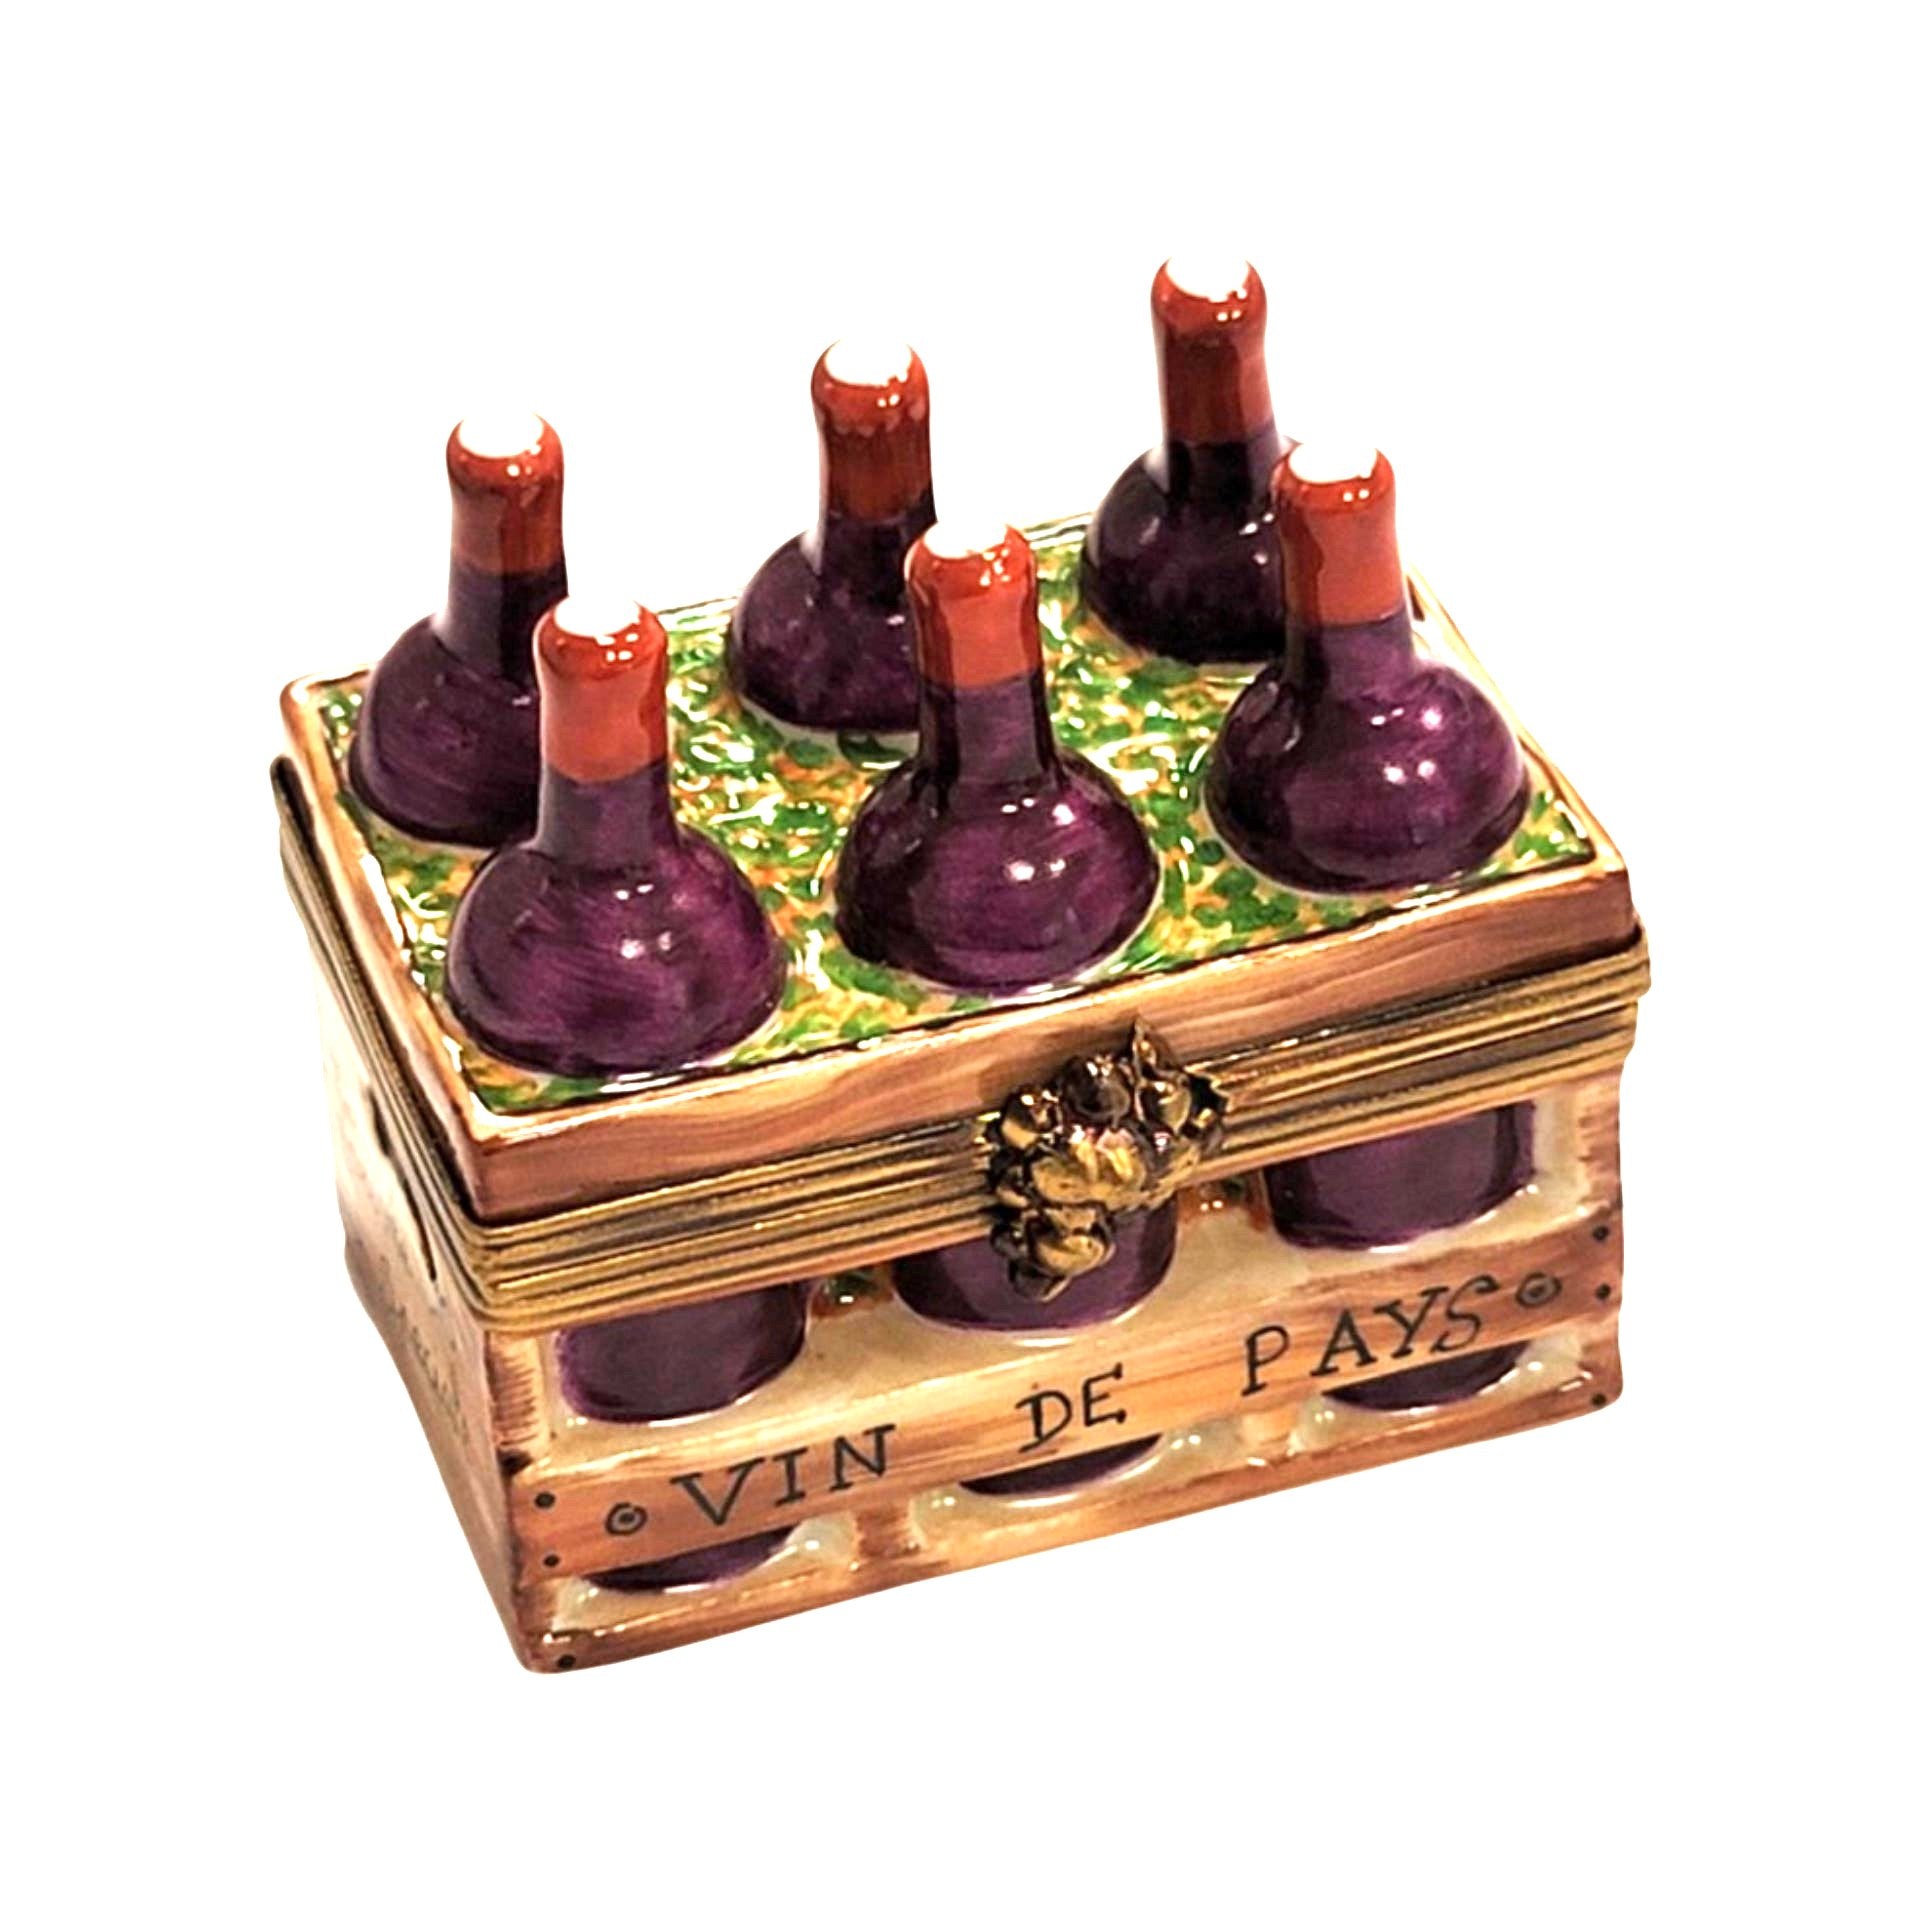 6 Bottles Wine in Crate Porcelain Limoges Trinket Box